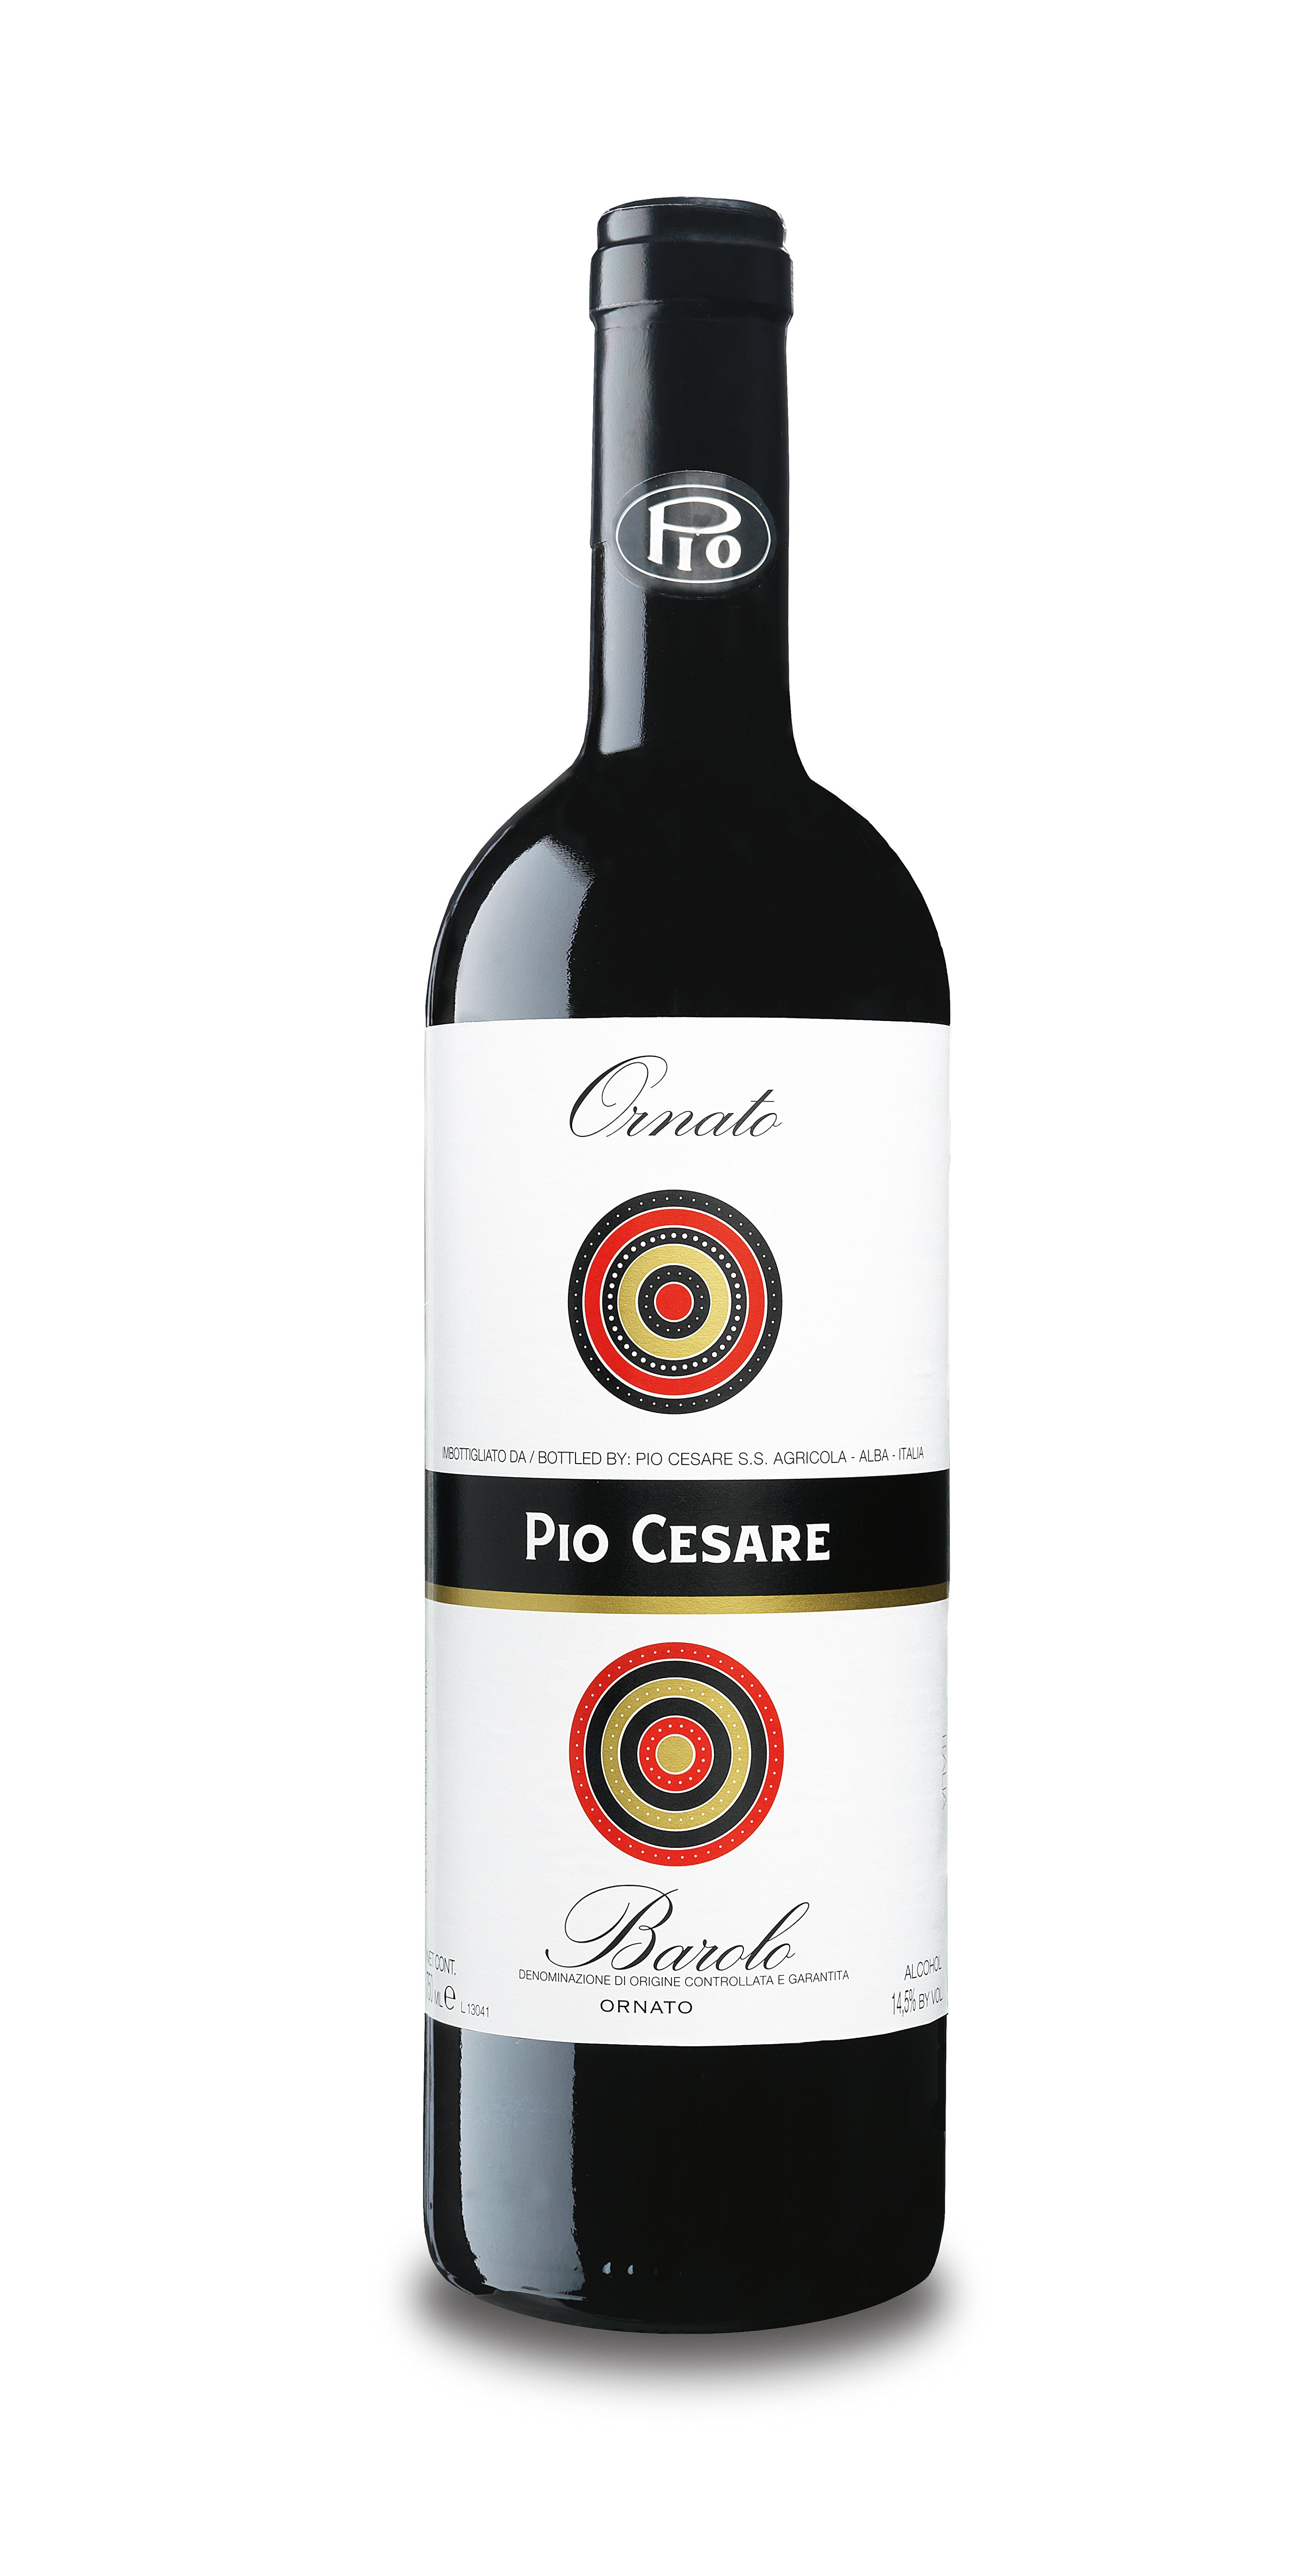 Wine Vins Pio Cesare Barolo Ornato Tinto